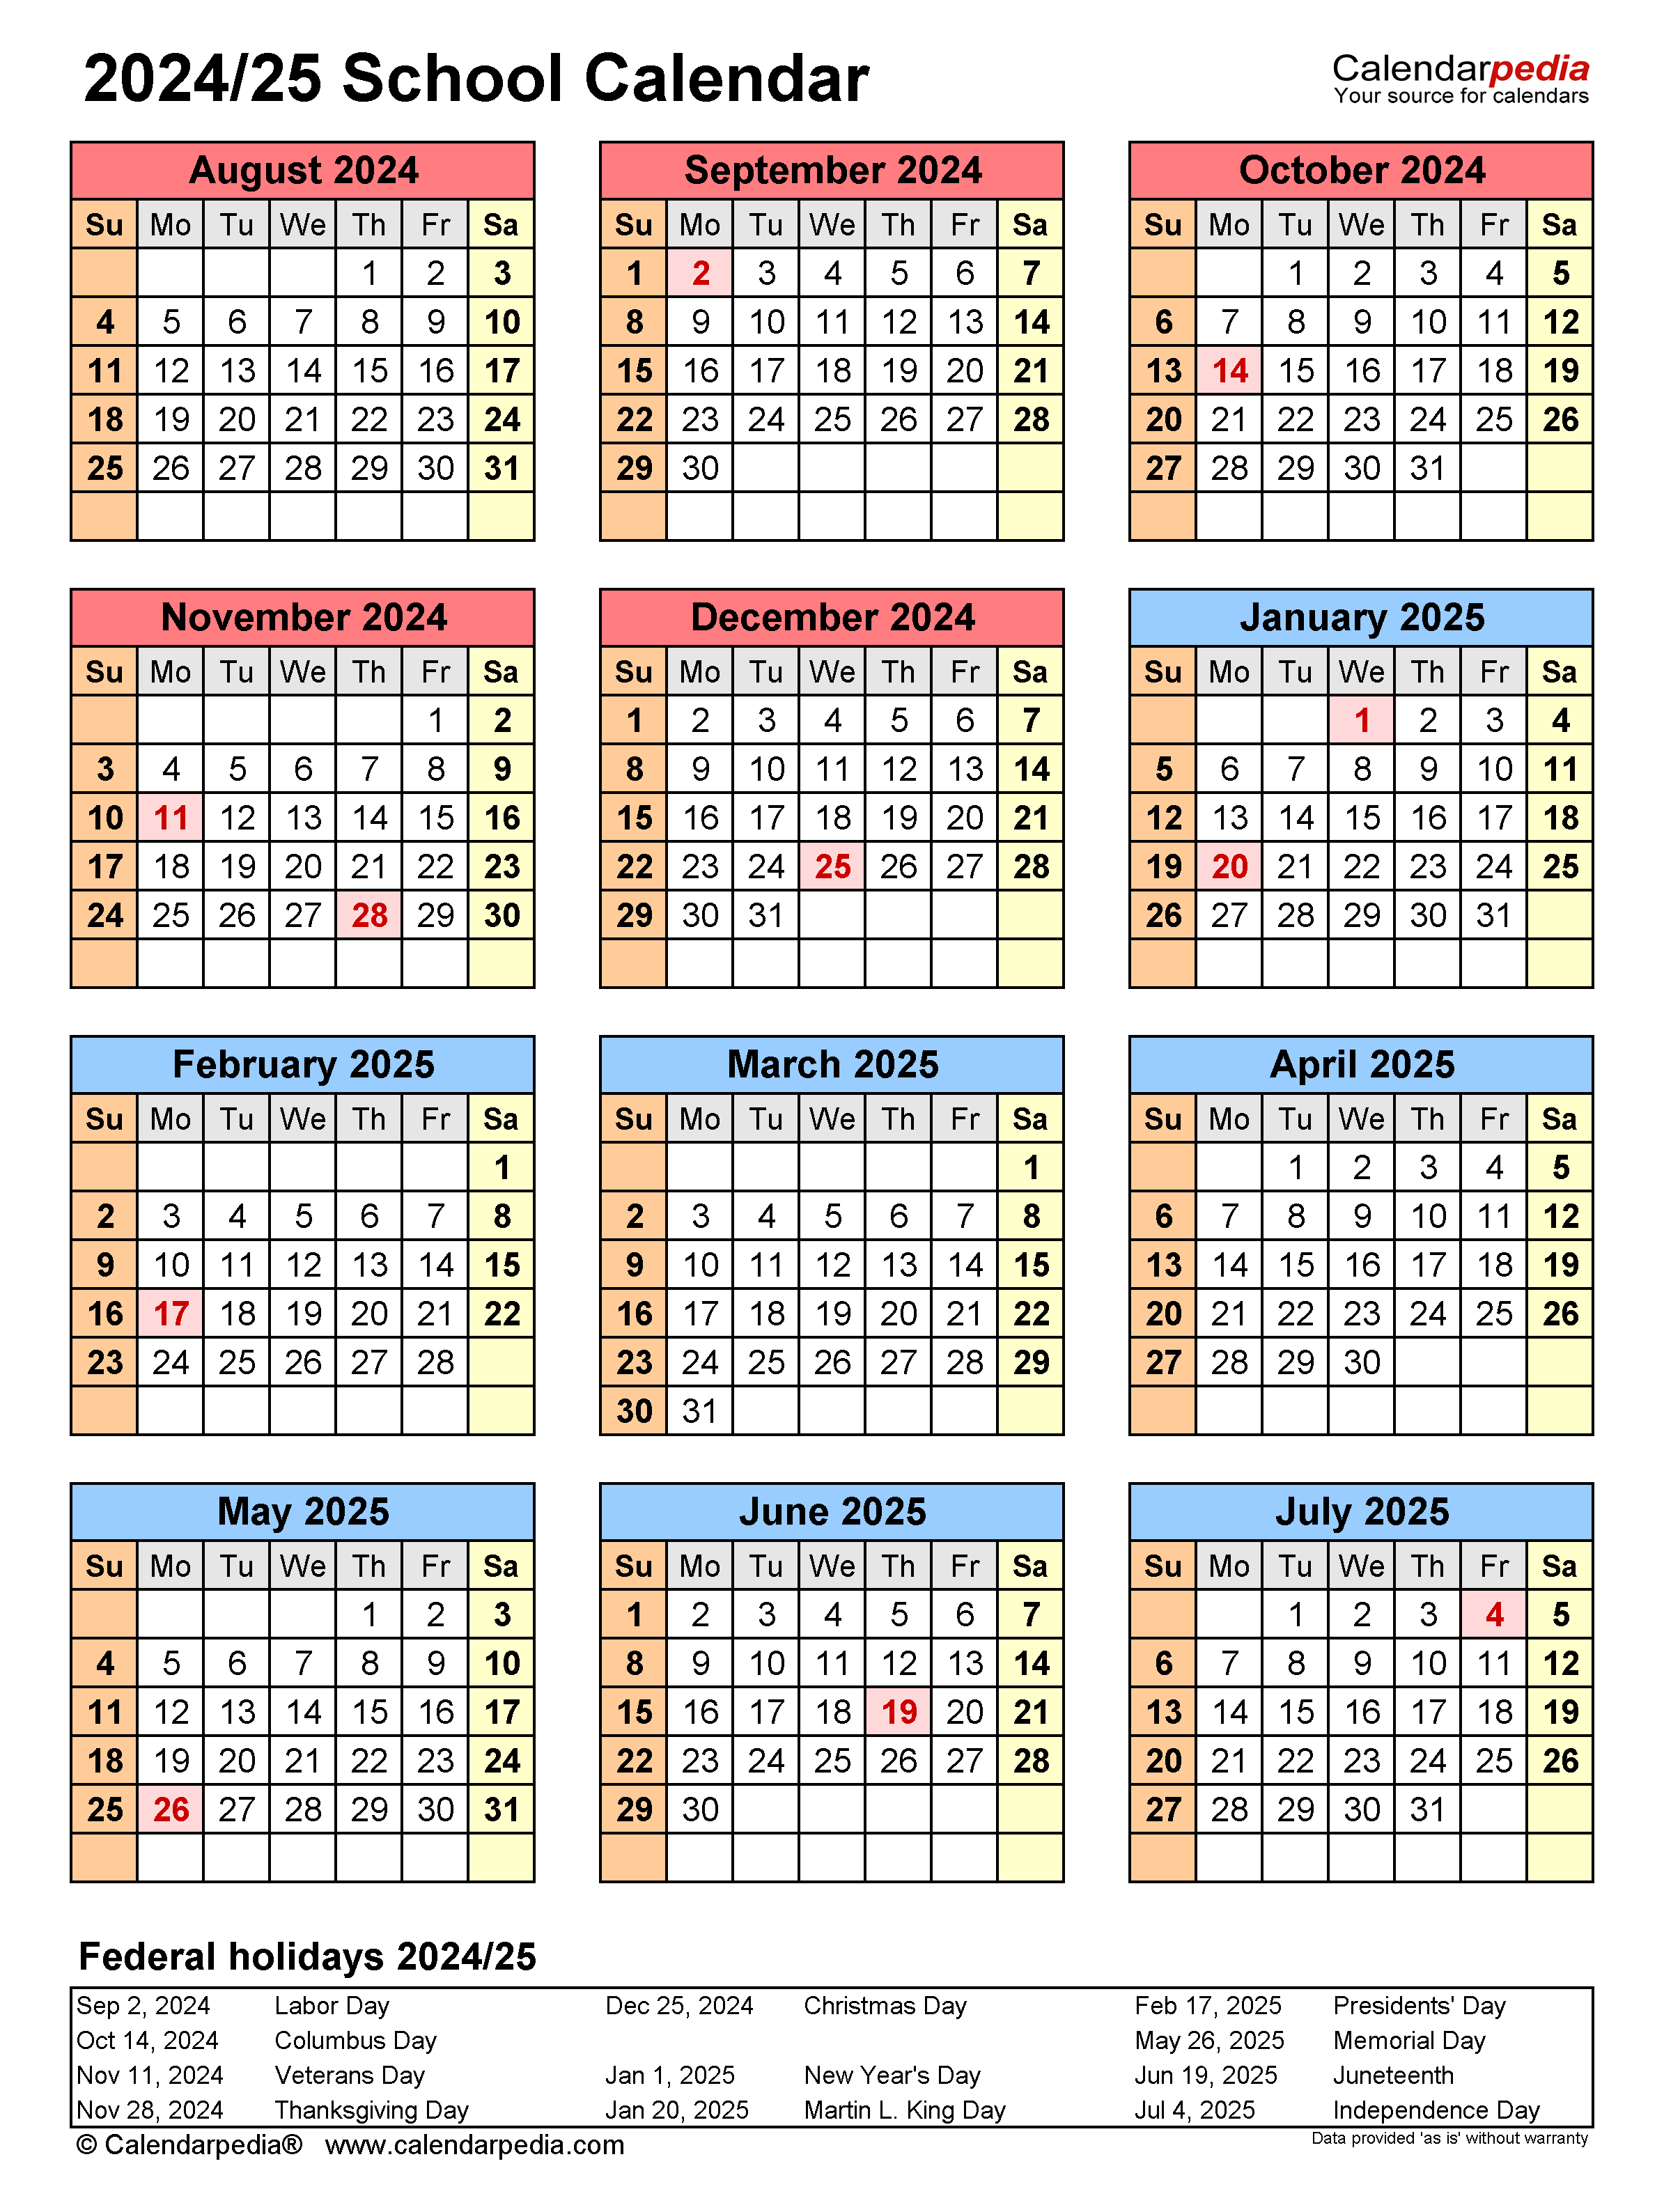 Qld Public Holidays 2025 Calendar